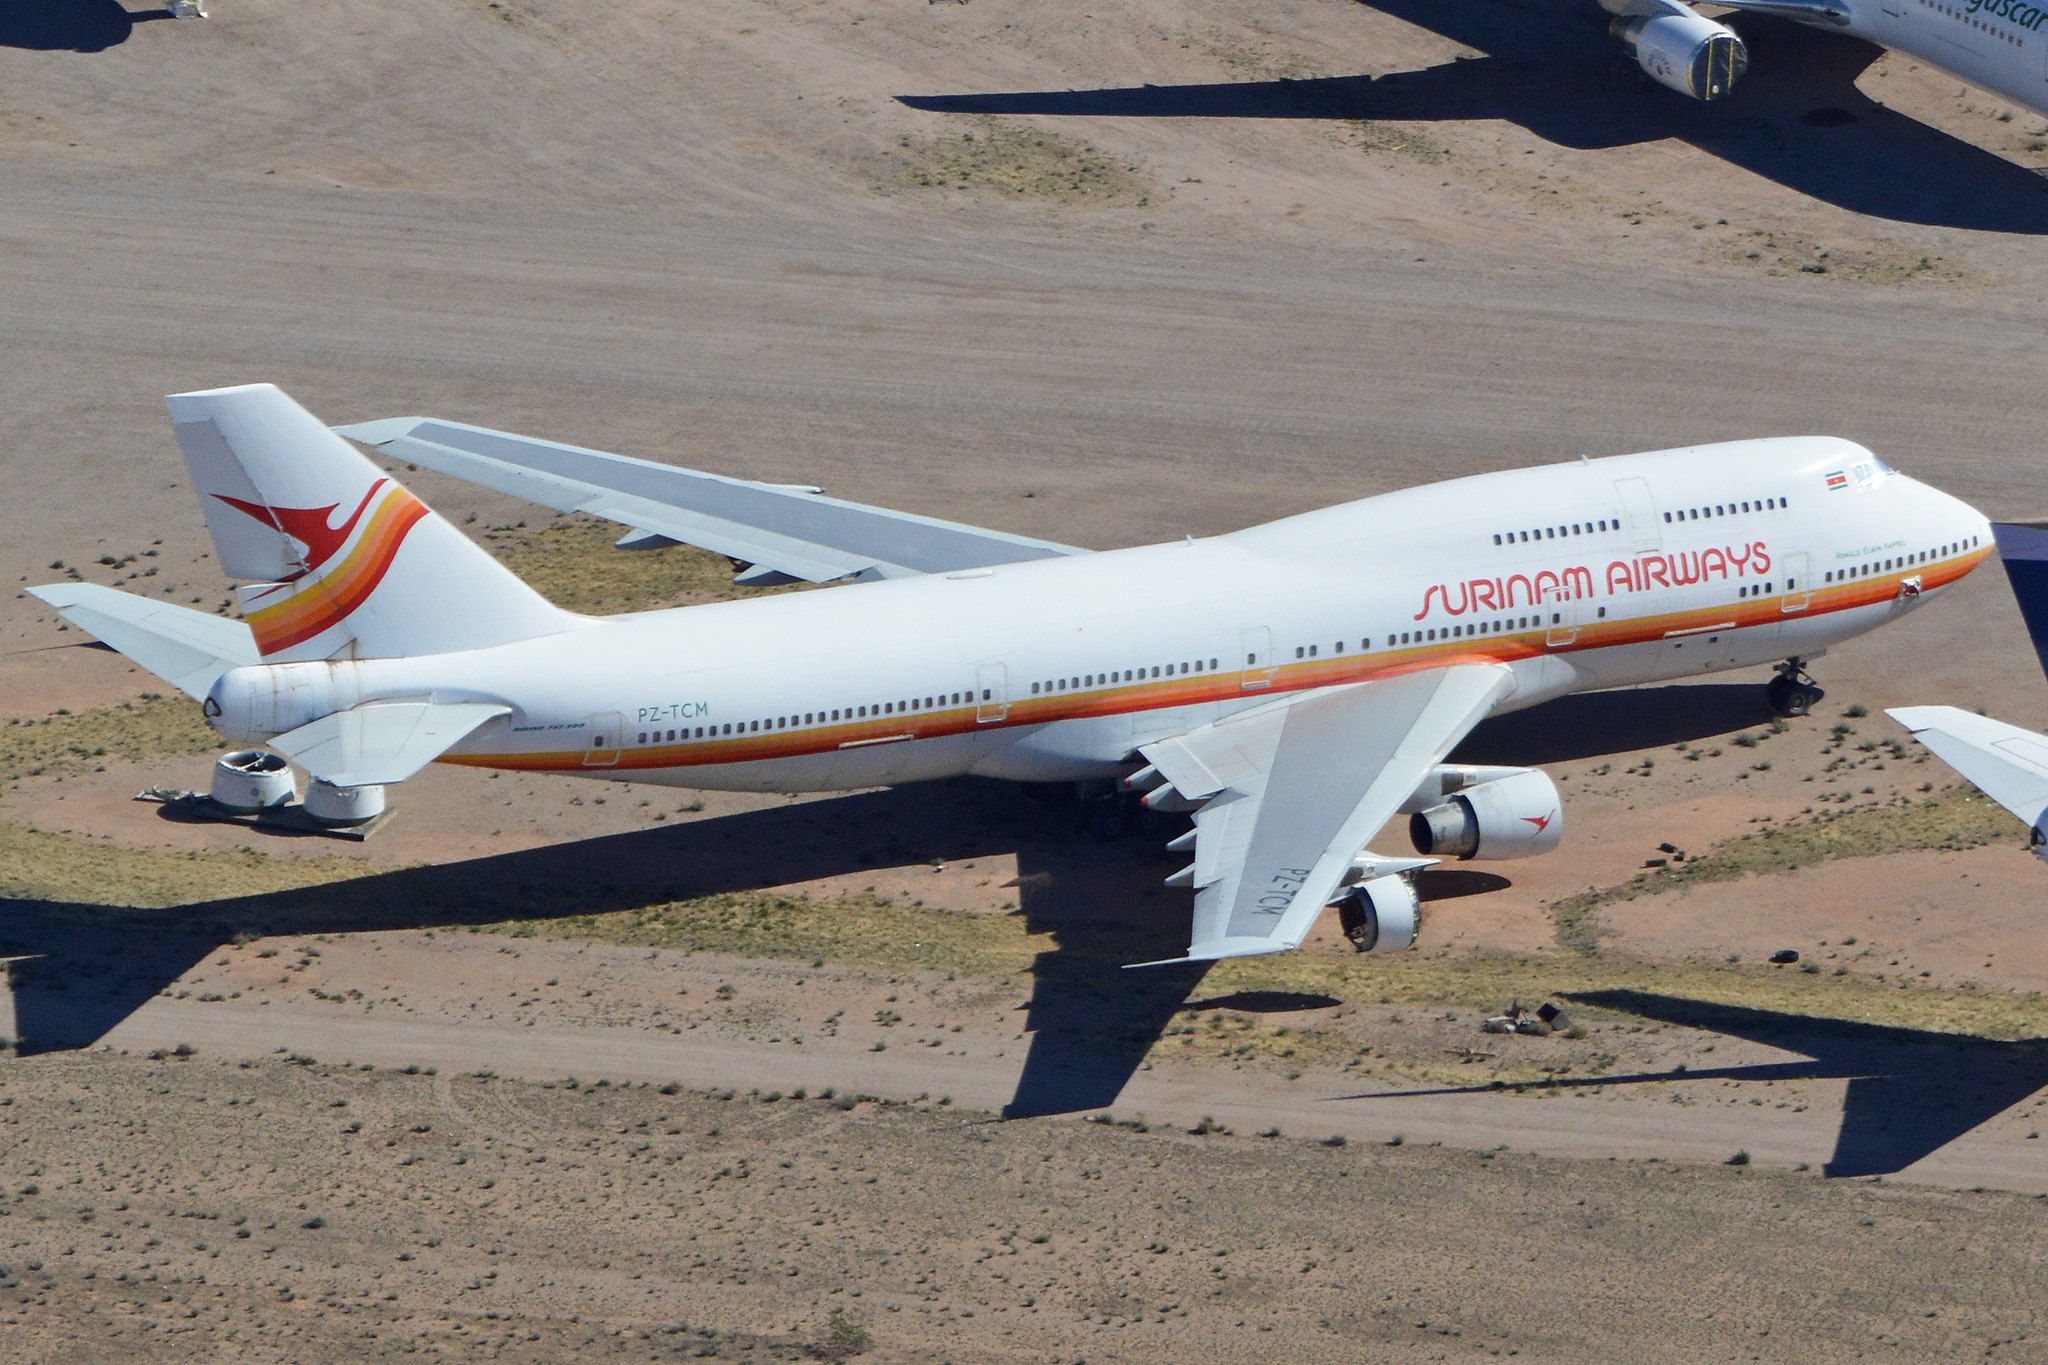 Surinam Airways' sole 747